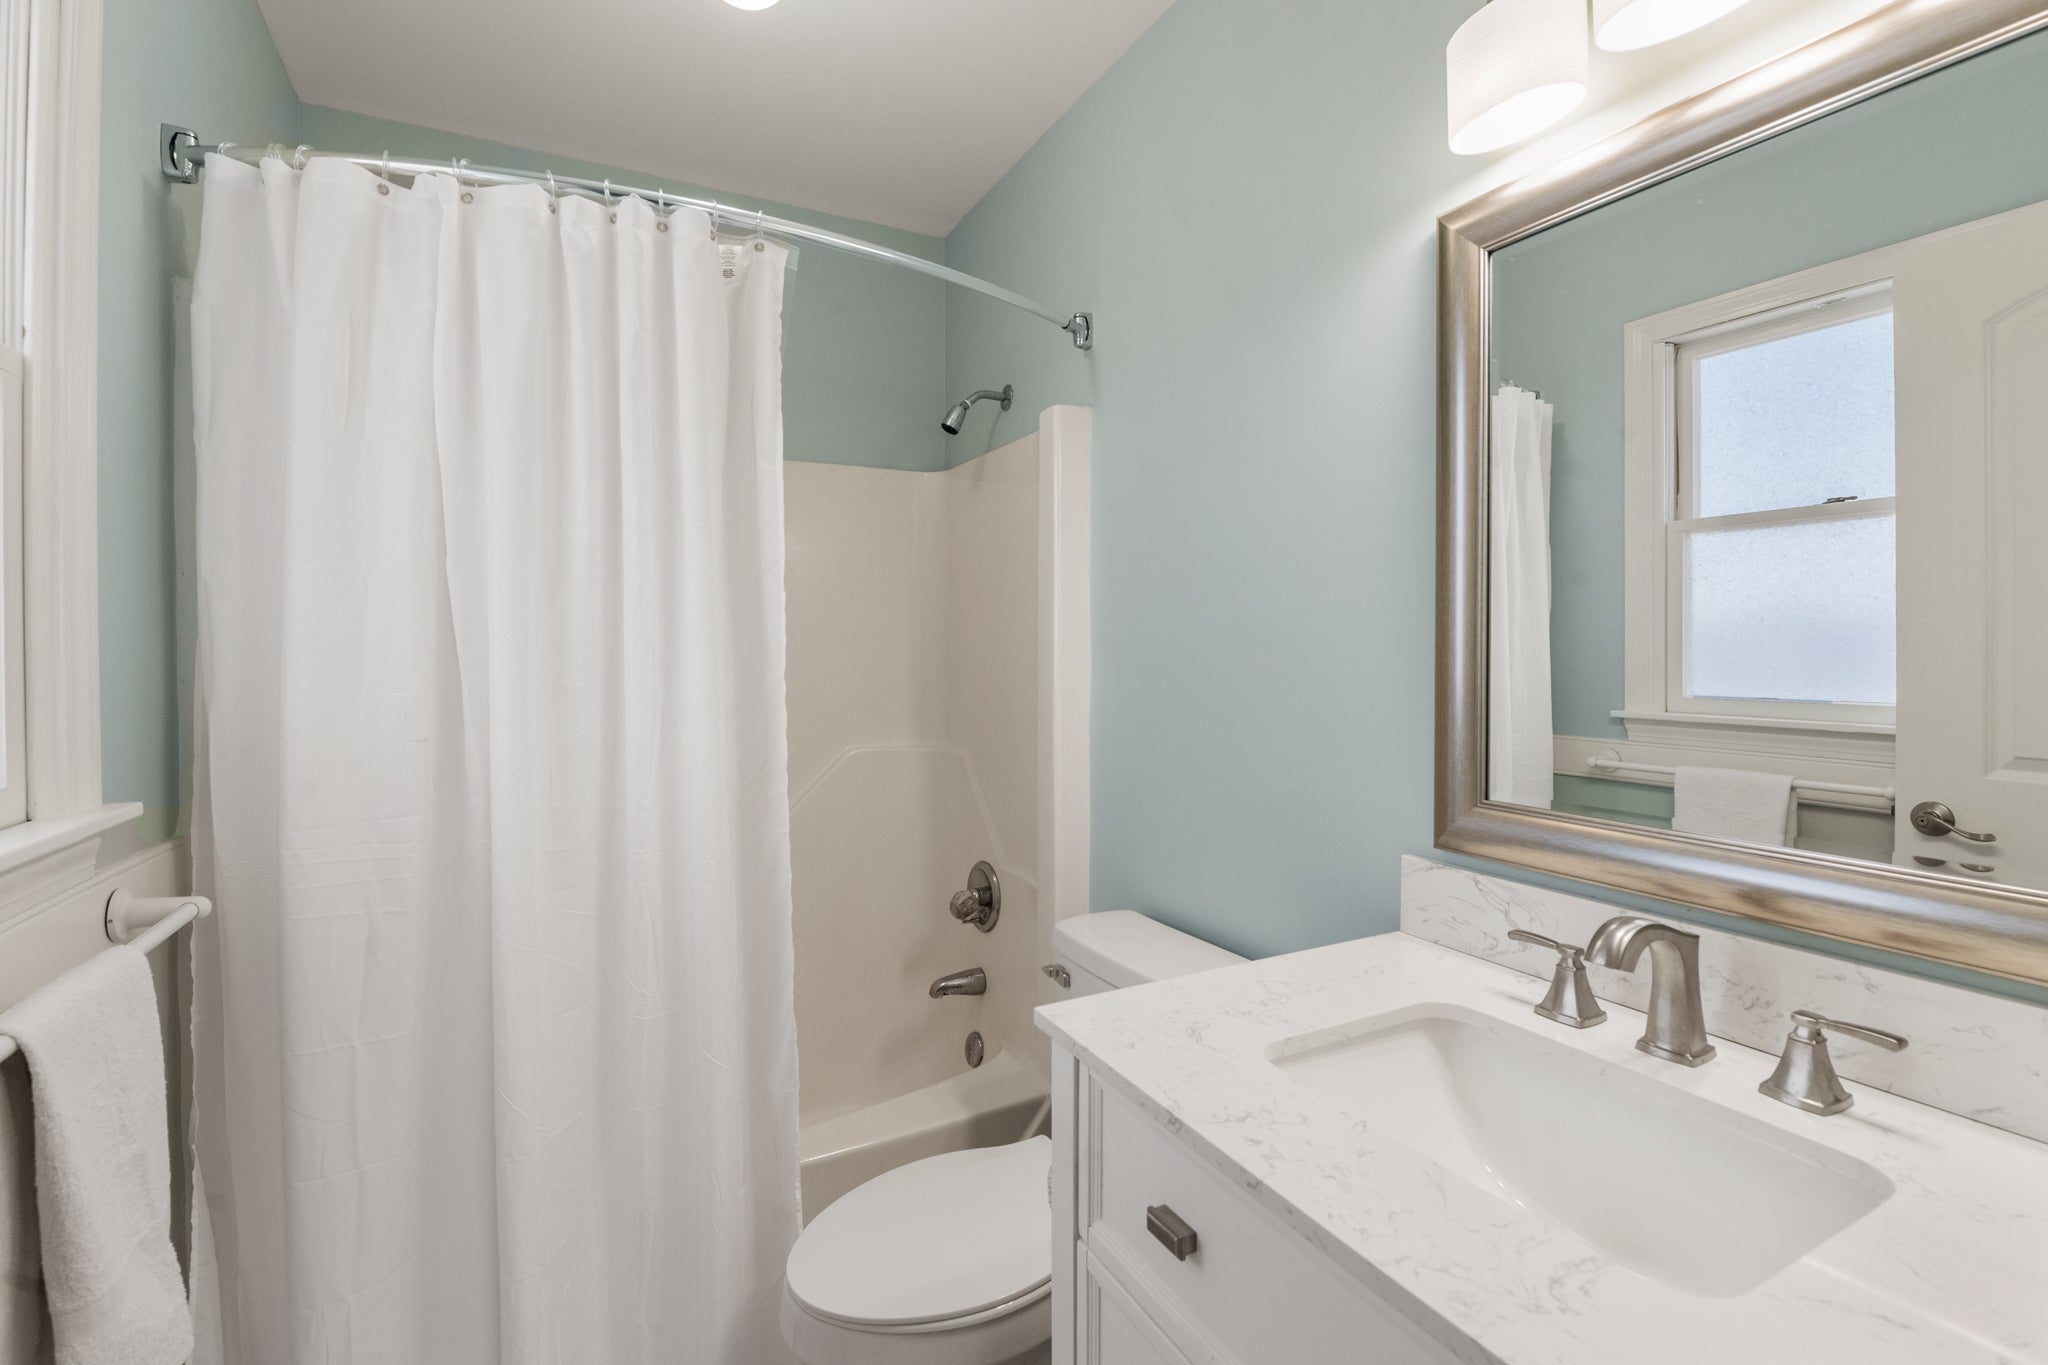 KDS0201: Woodshed l Mid Level Bedroom 4 Private Bath